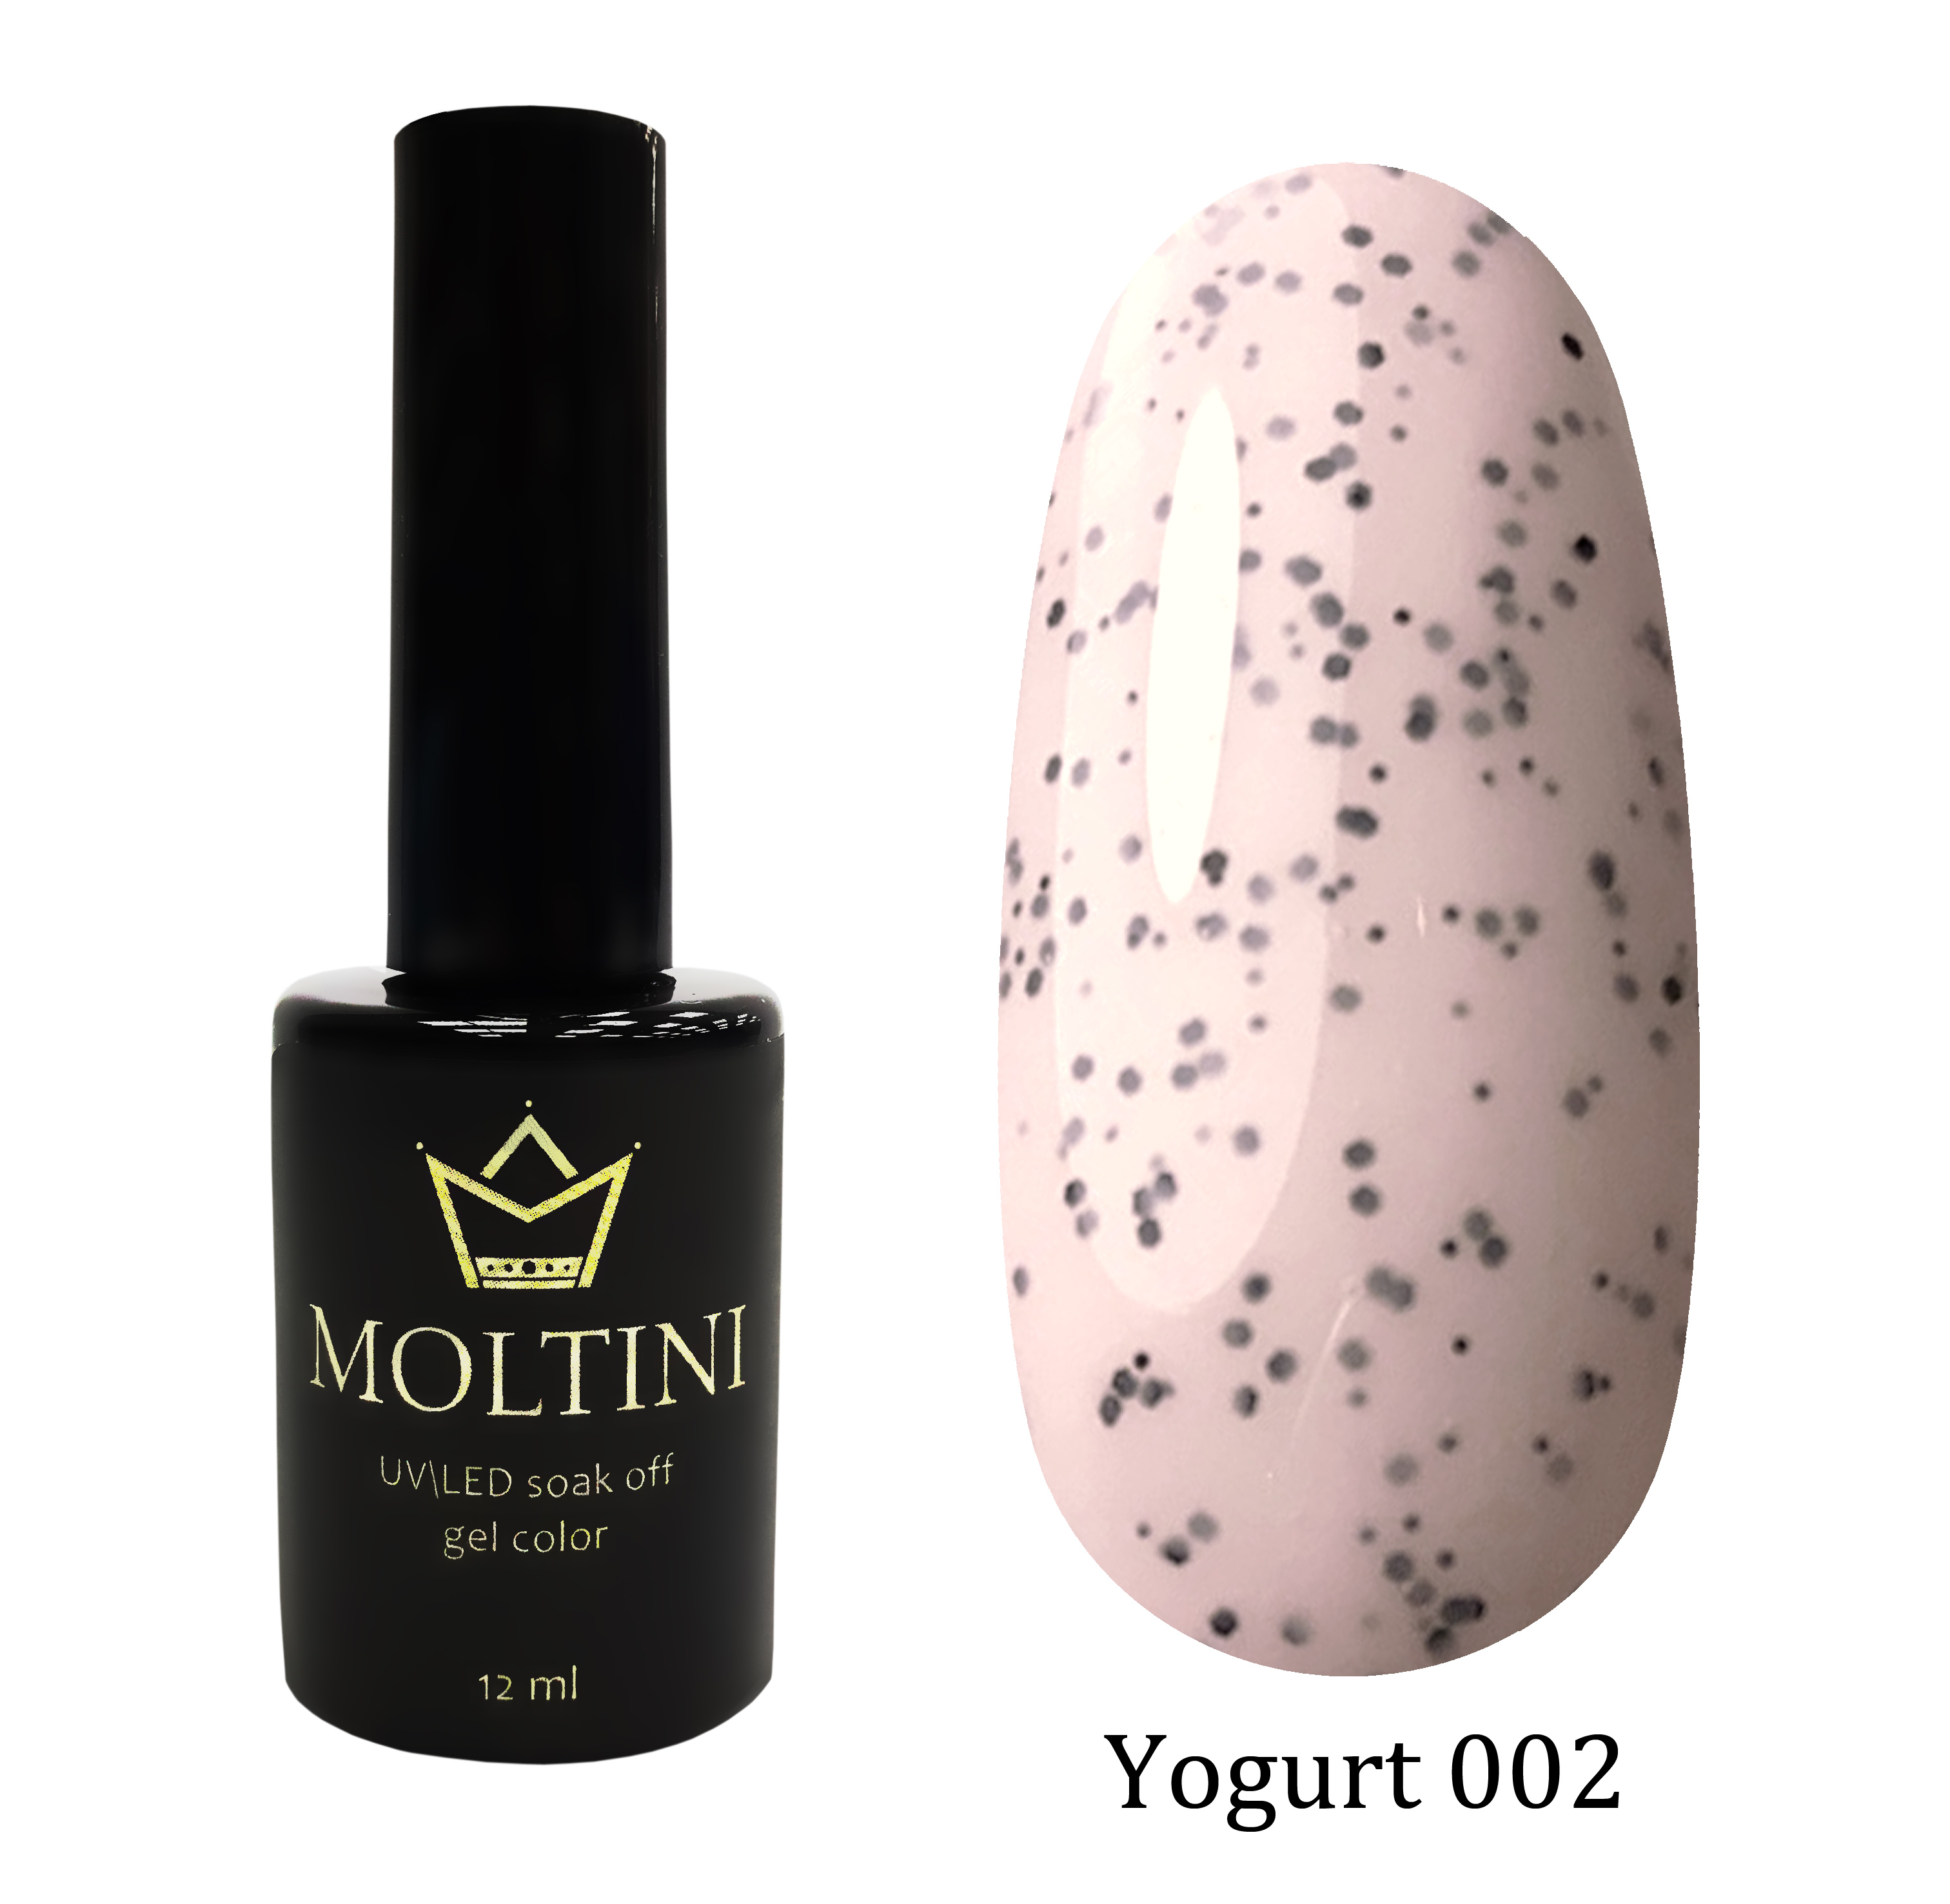 Moltini цветной гель-лак Yogurt 002, 12 мл